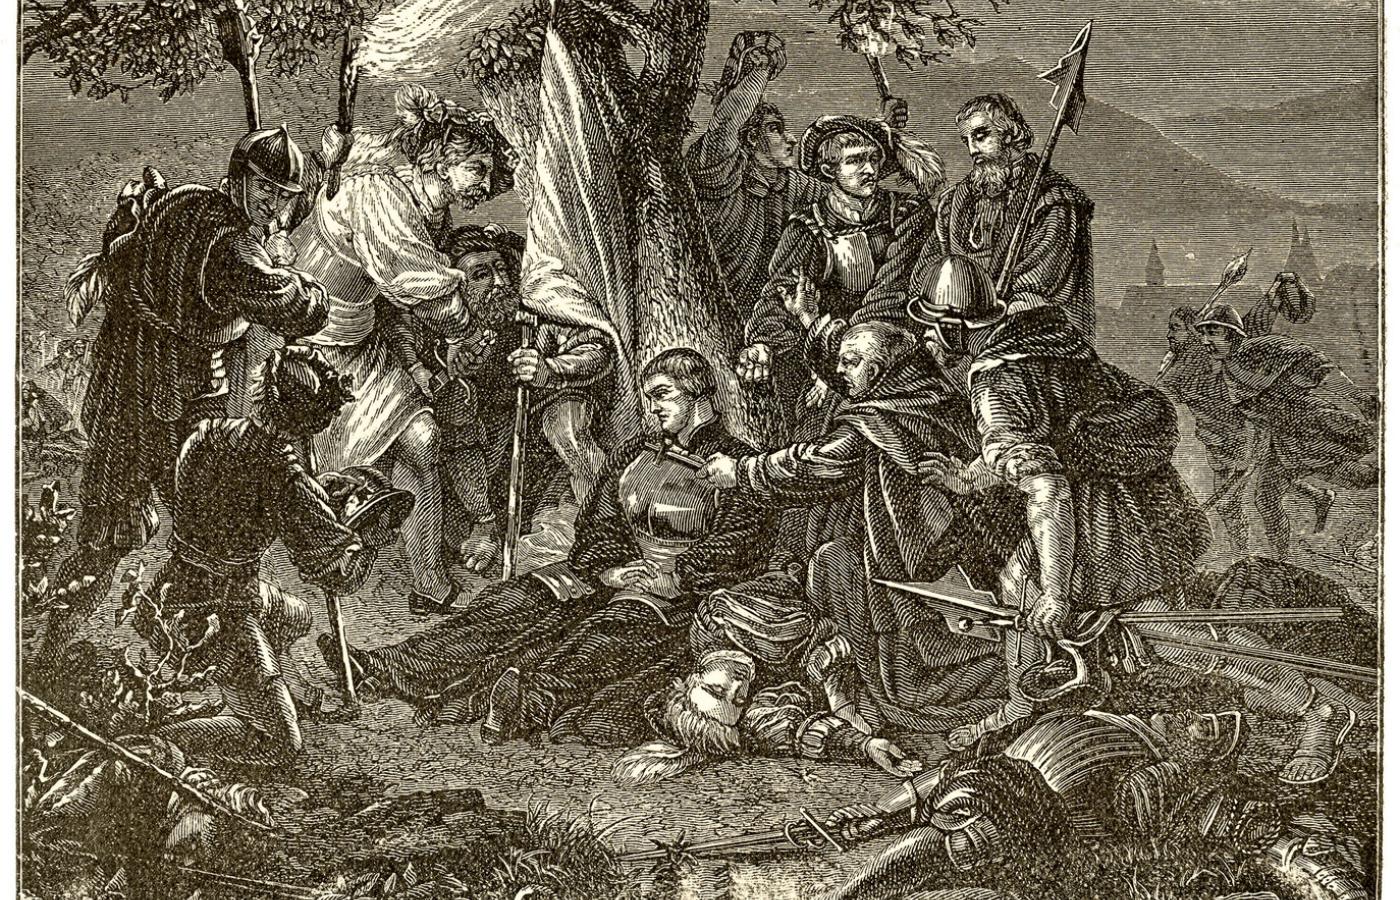 Śmierć Ulricha Zwingliego pod Kappel, ilustracja z epoki